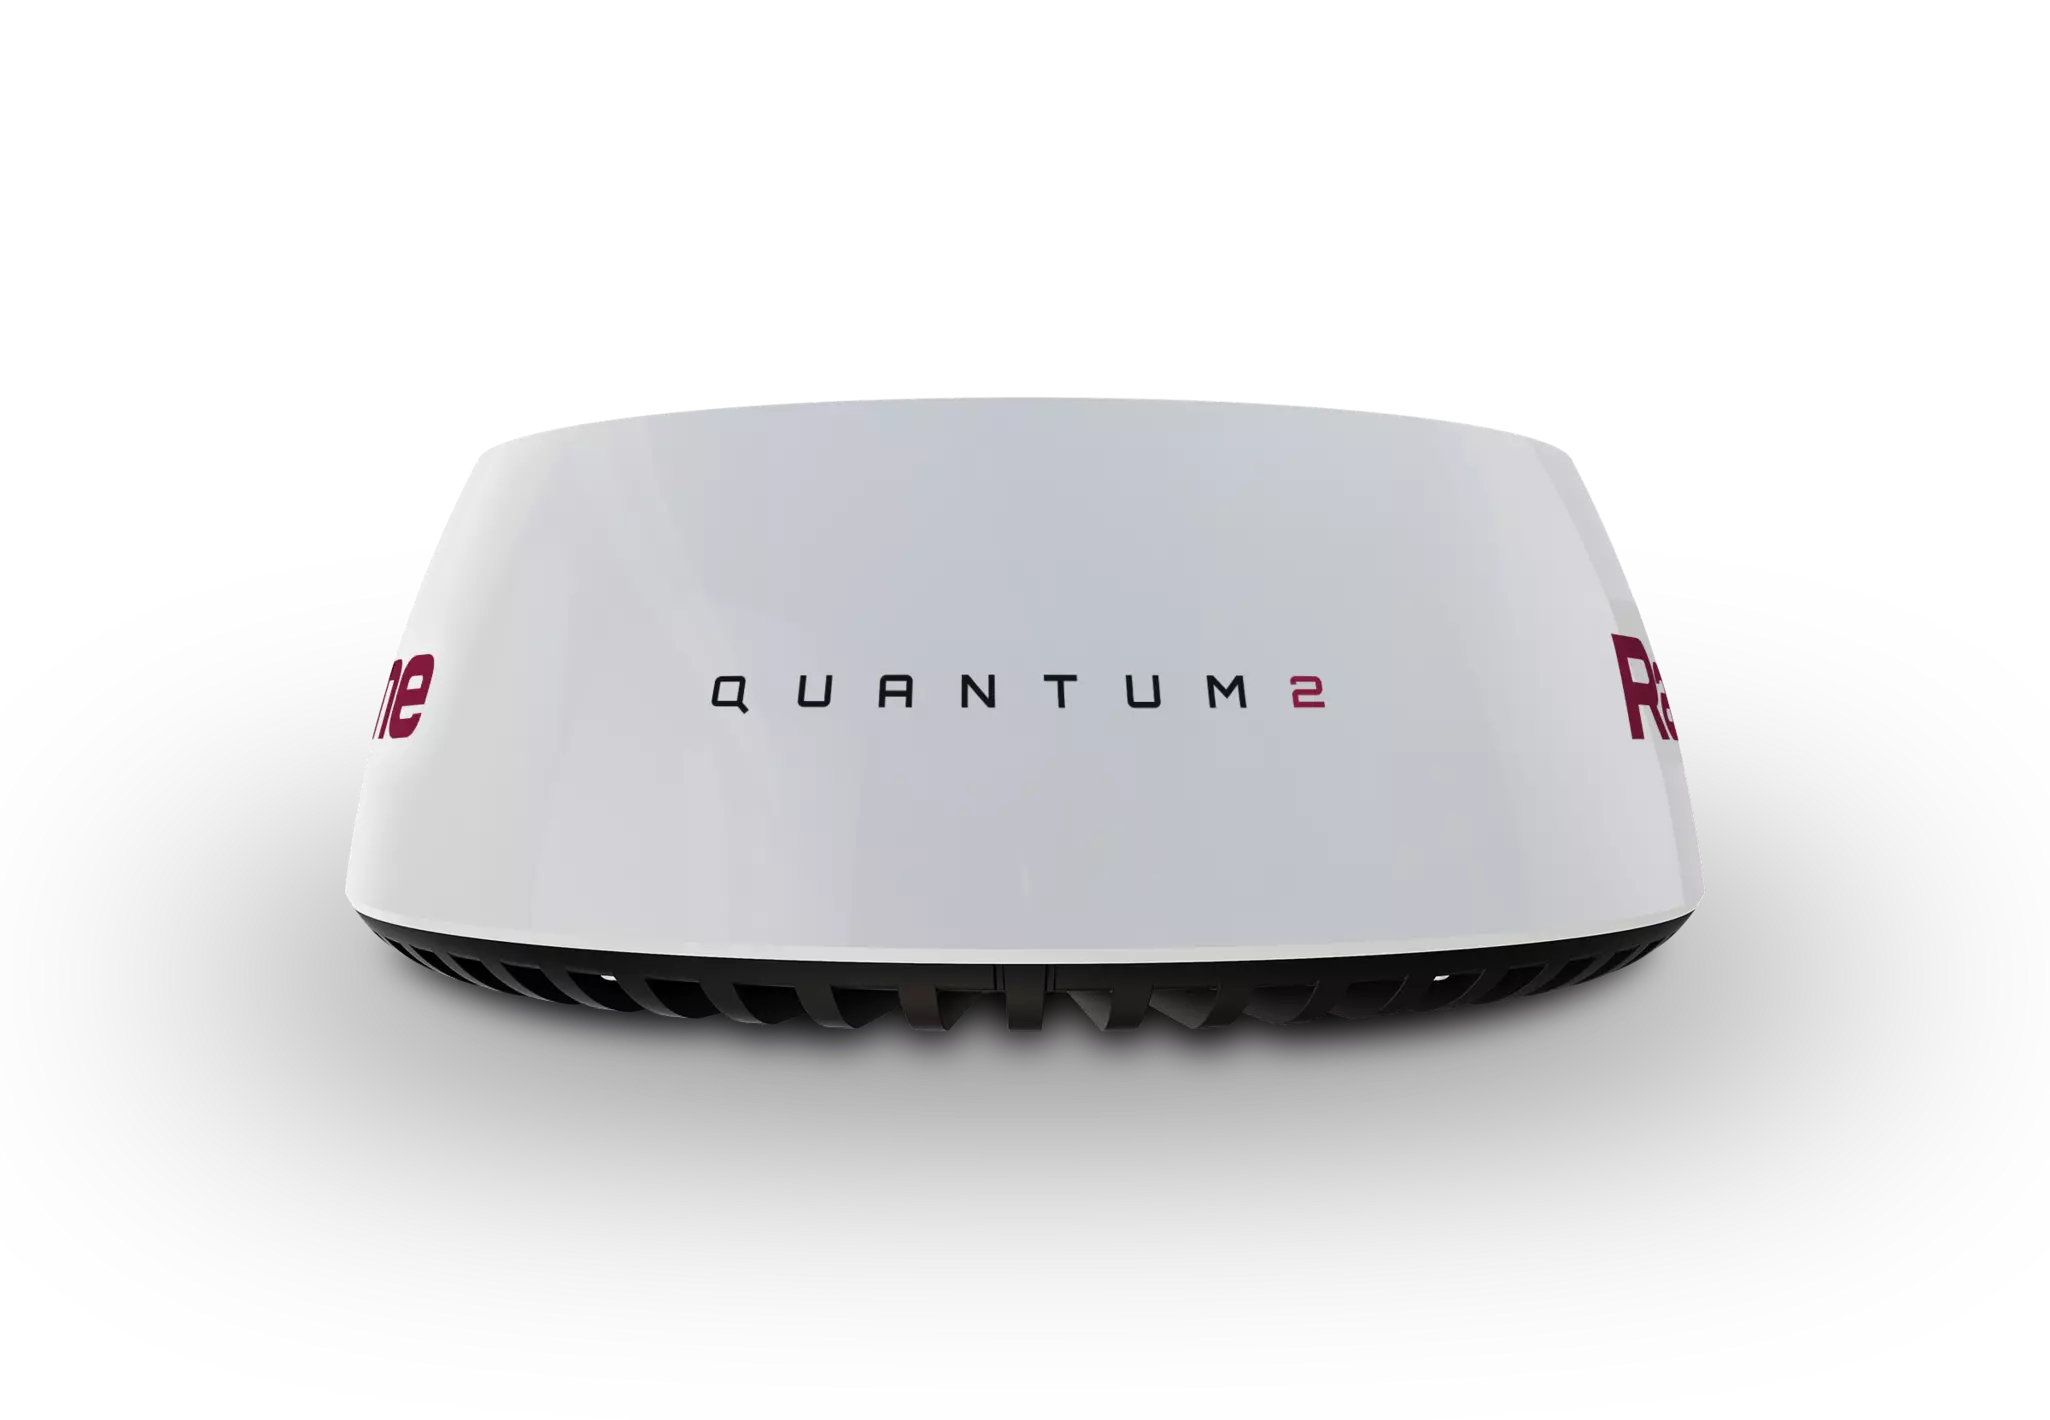 Quantum radar